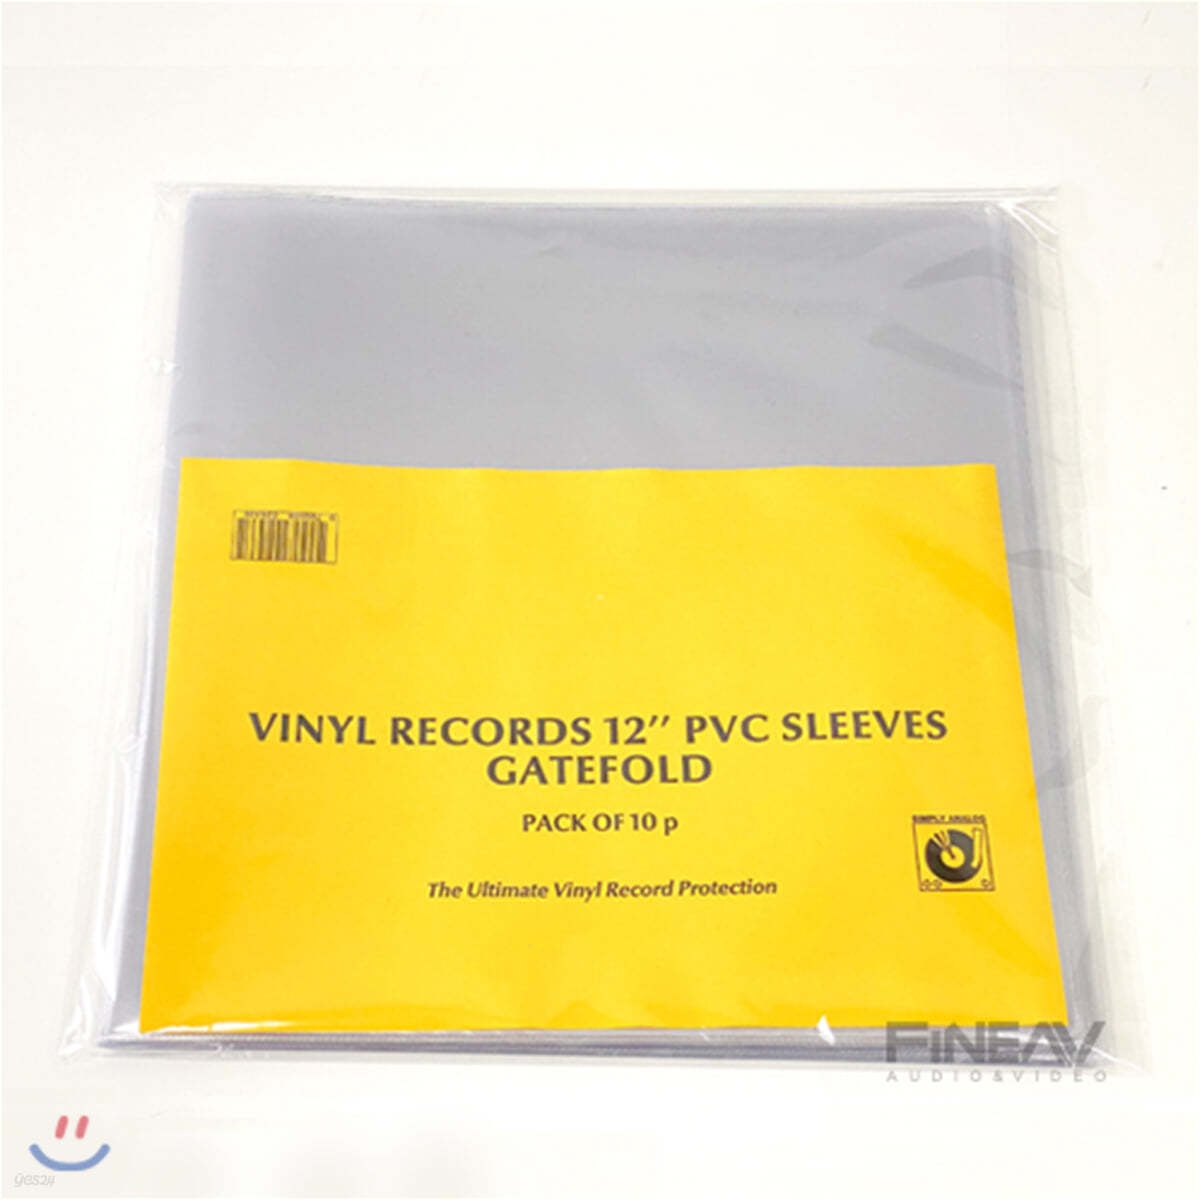 심플리 아날로그 레코드 외부 슬리브 2LP용 12인치 PVC 커버 (Simply Analog Vinyl Record Gatefold 2LP PVC Sleeves)